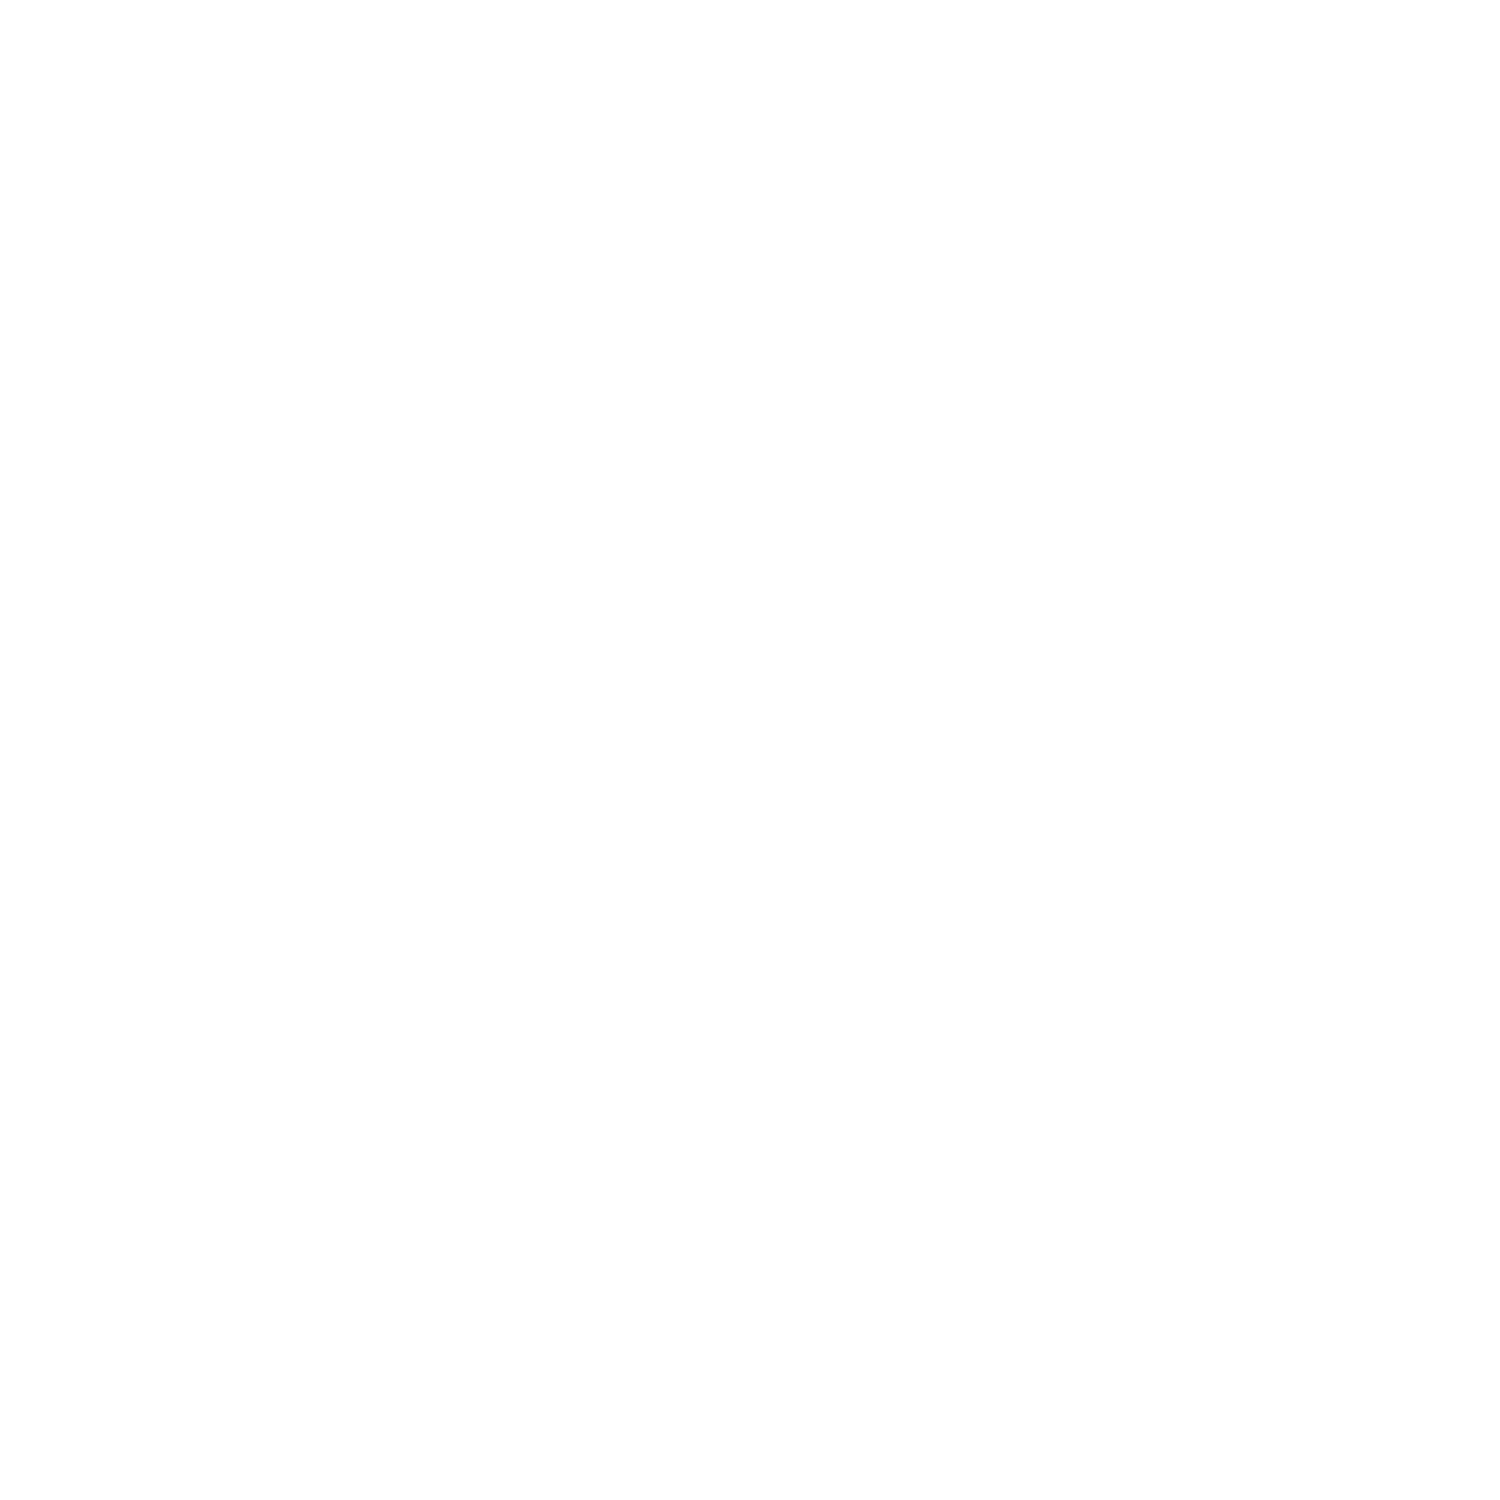 The Mana Kai Experience